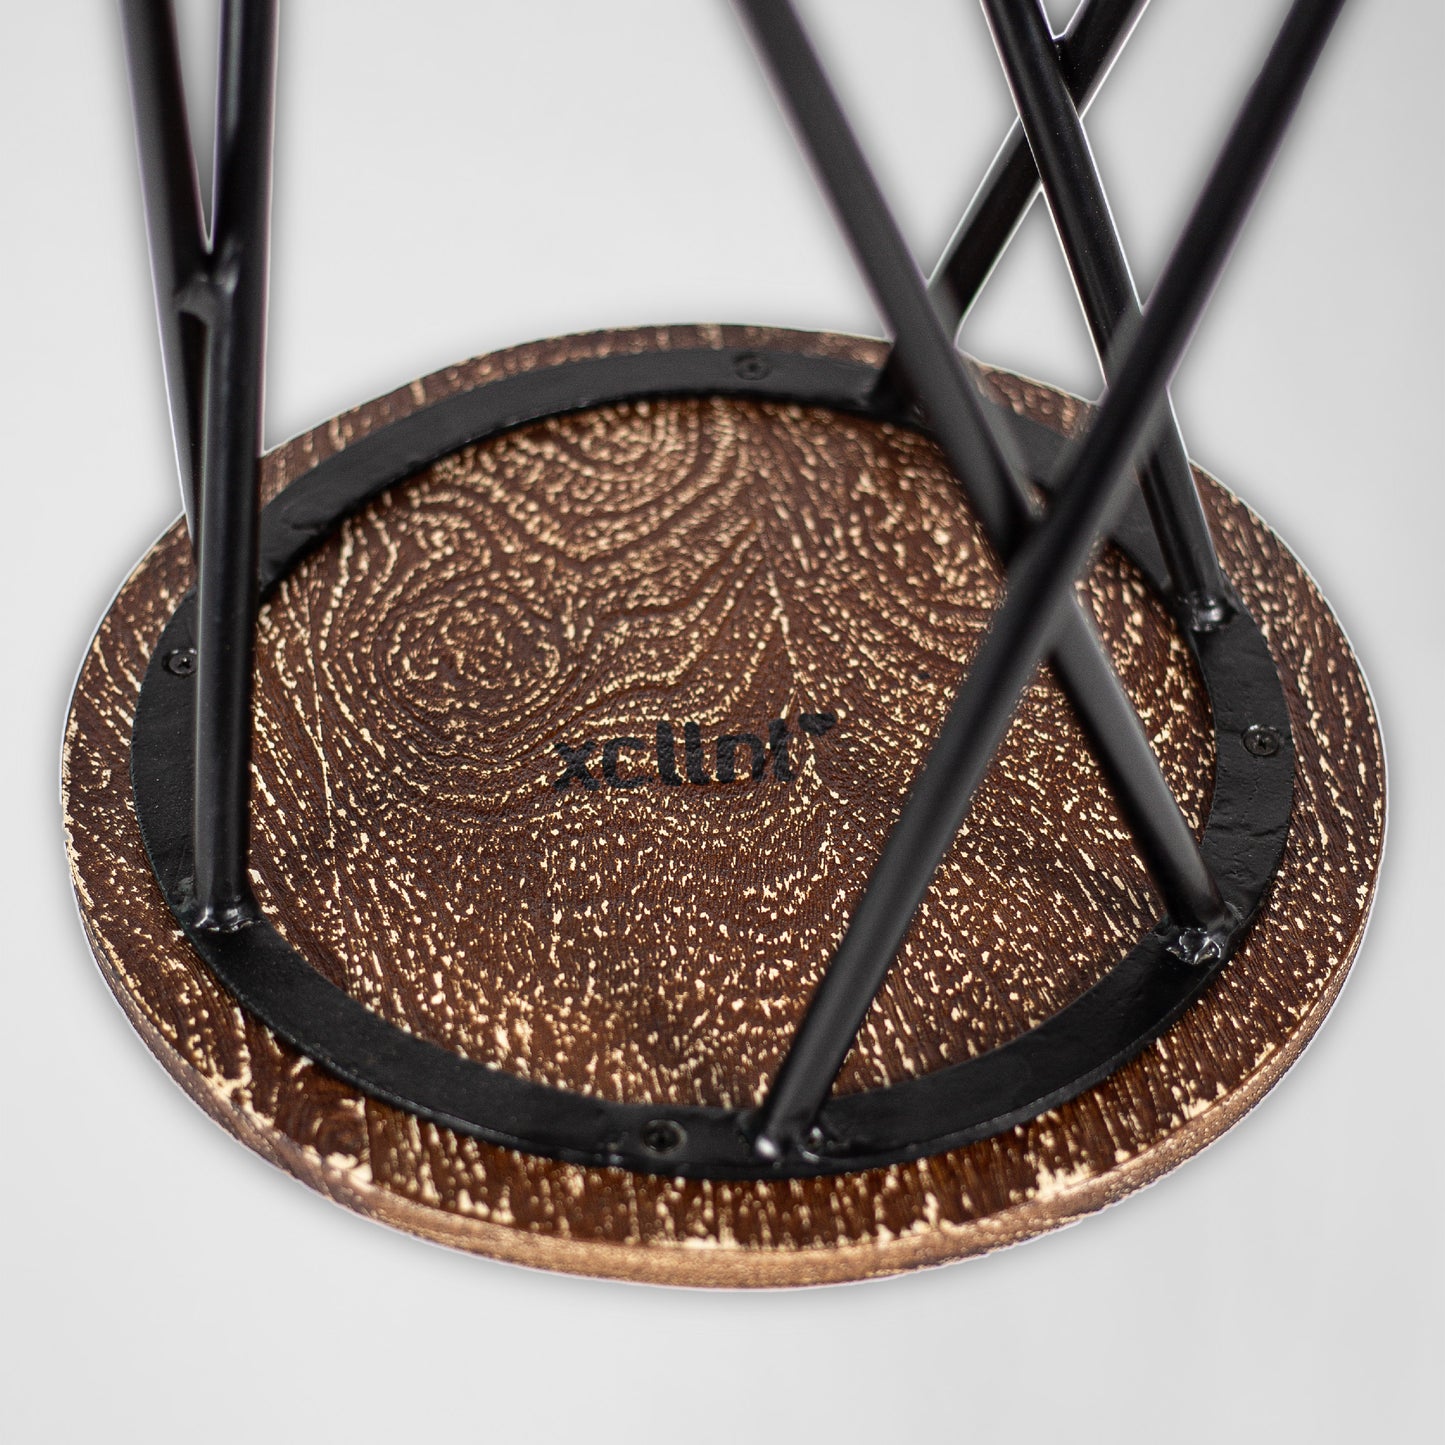 HairPin 104 – Handmade Industrie-Design Hocker aus Metall mit Holzsitz in schwarz oder weiss